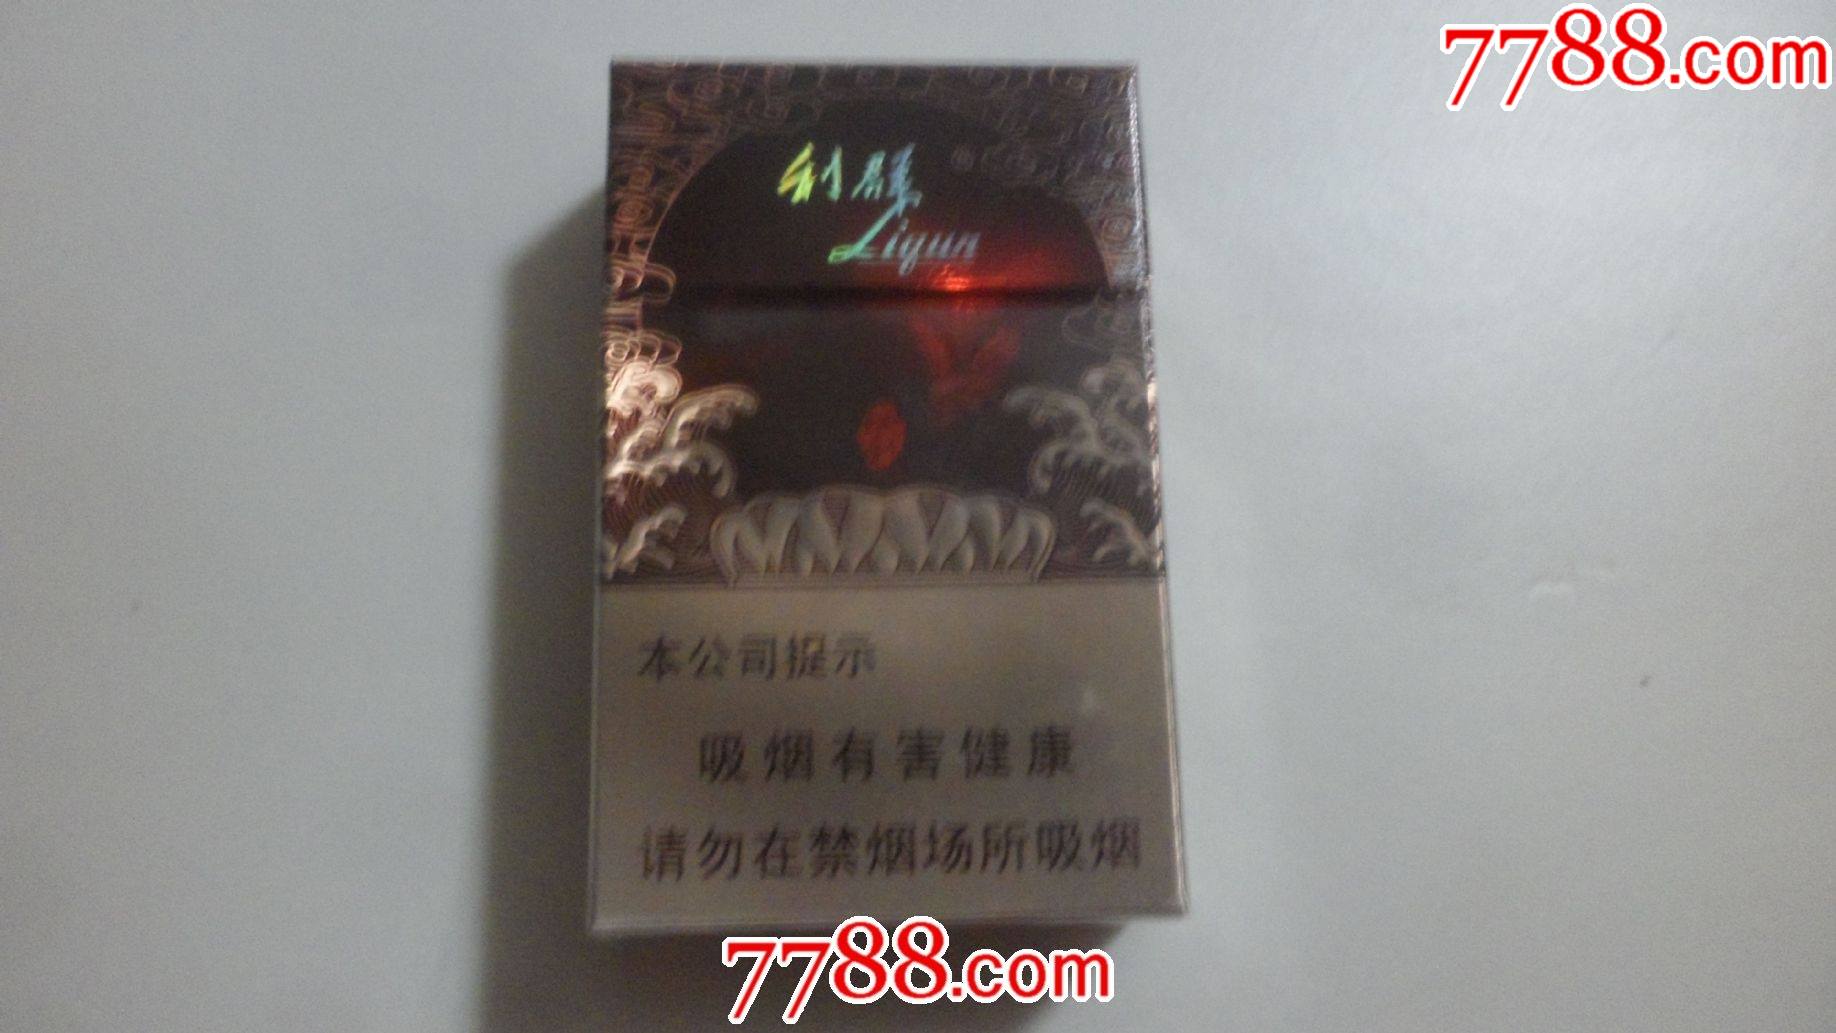 利群香烟红22元硬盒图片